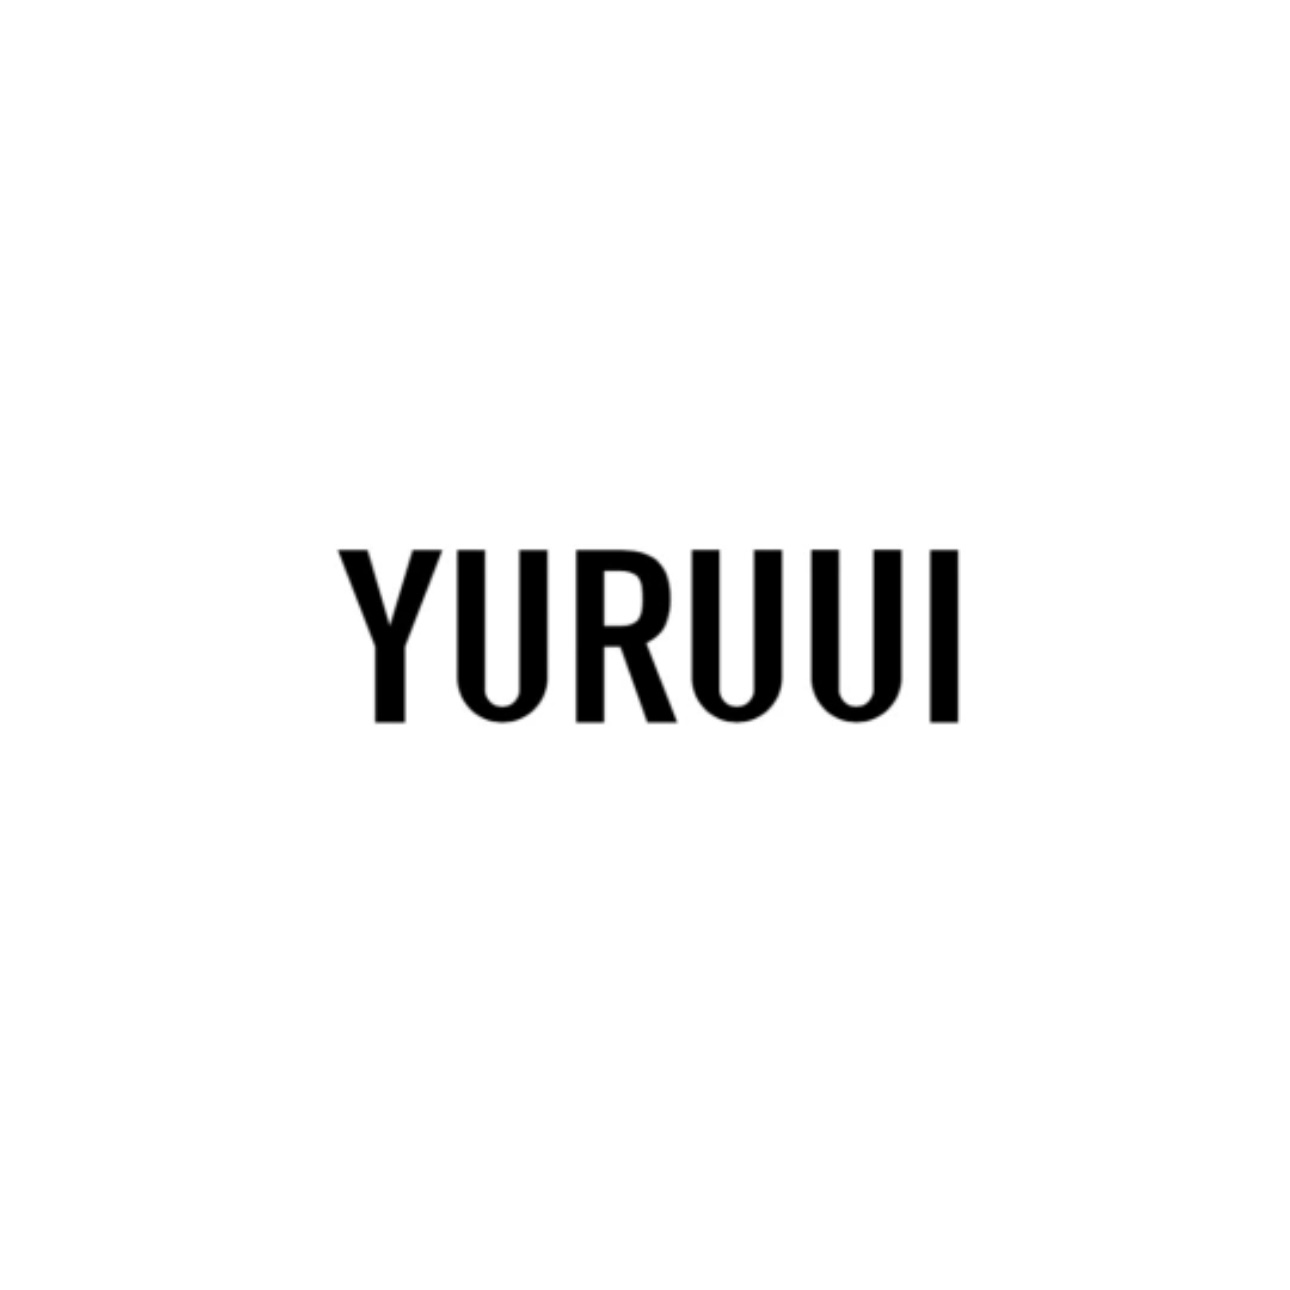 YURUUI母婴用品生产厂家